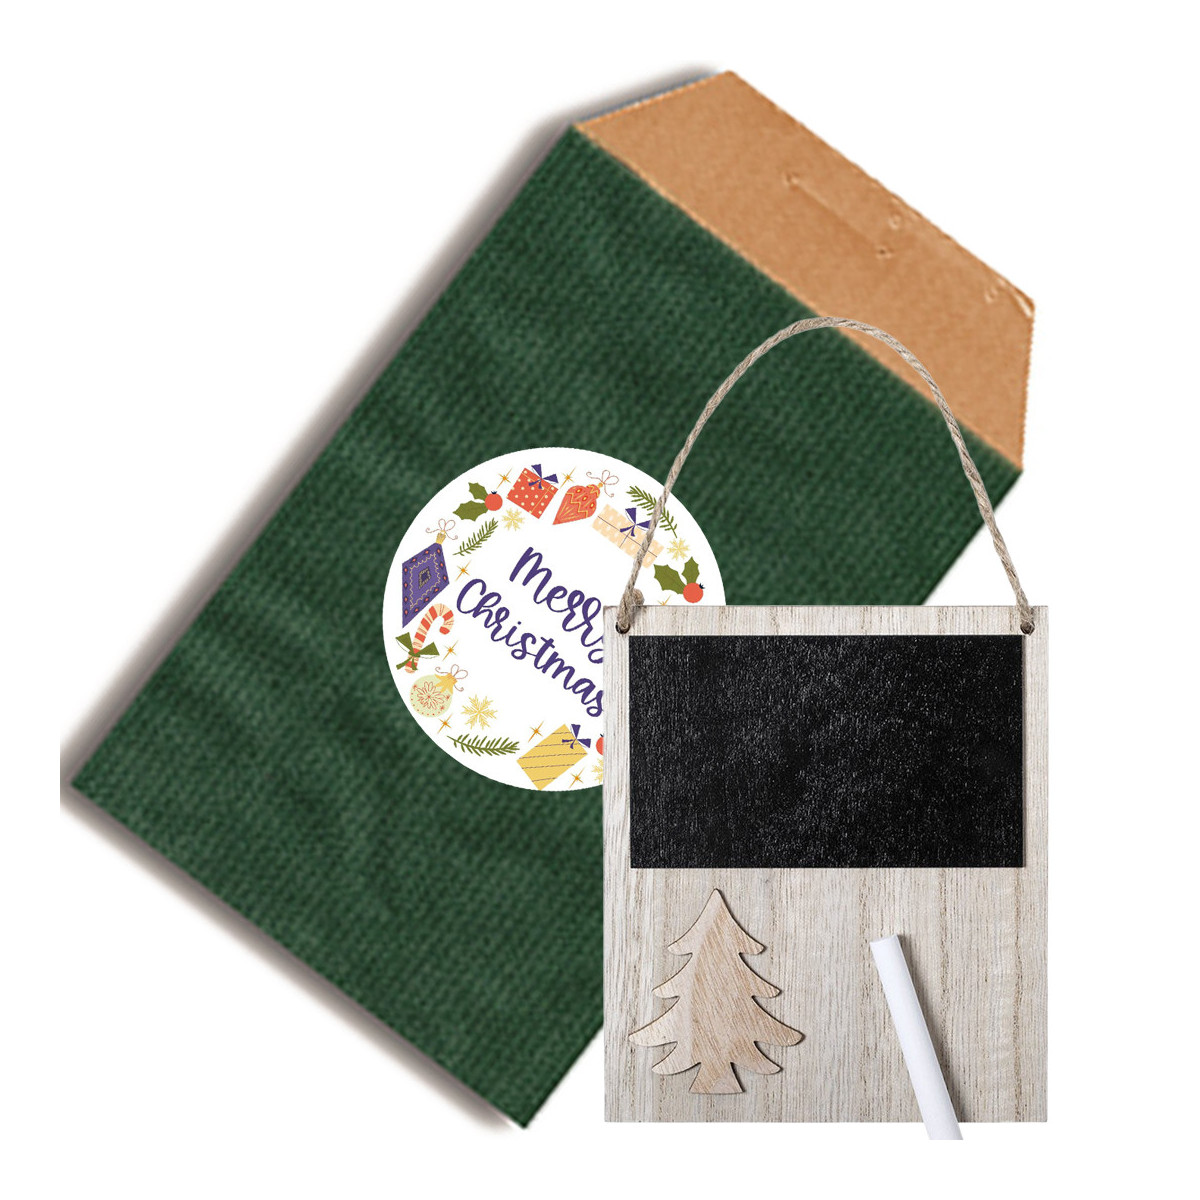 Petit tableau de noël en bois dans une enveloppe design en kraft vert et adhésif personnalisé à votre image